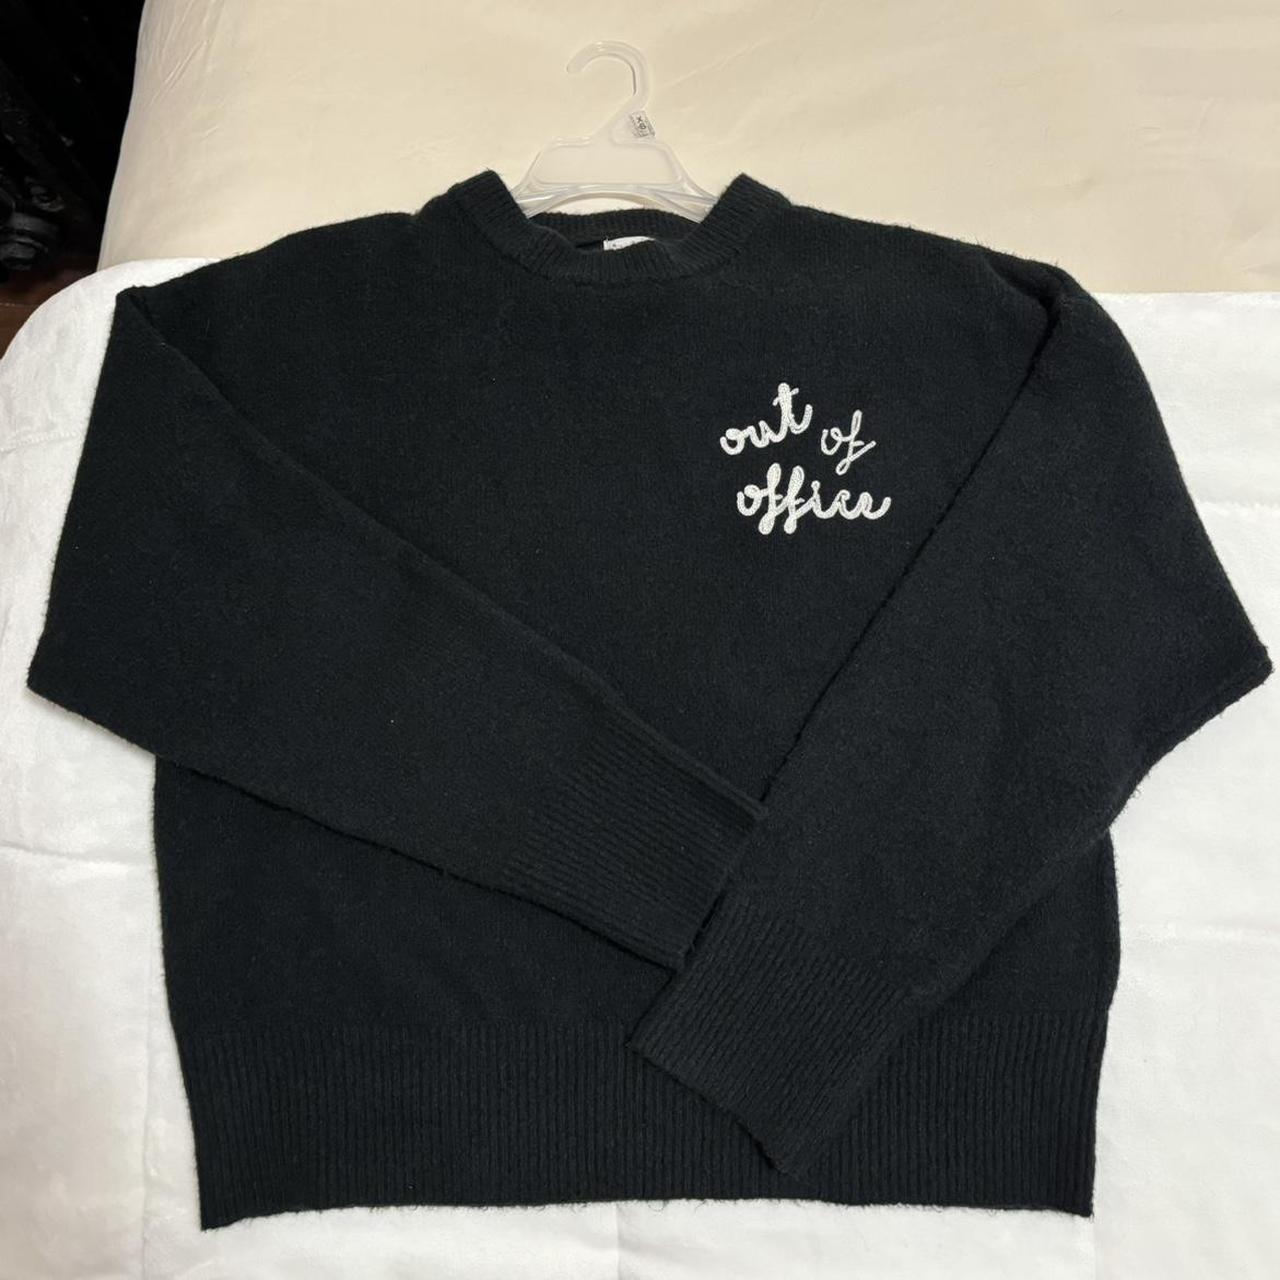 Black workwear slogan knit sweater - Depop